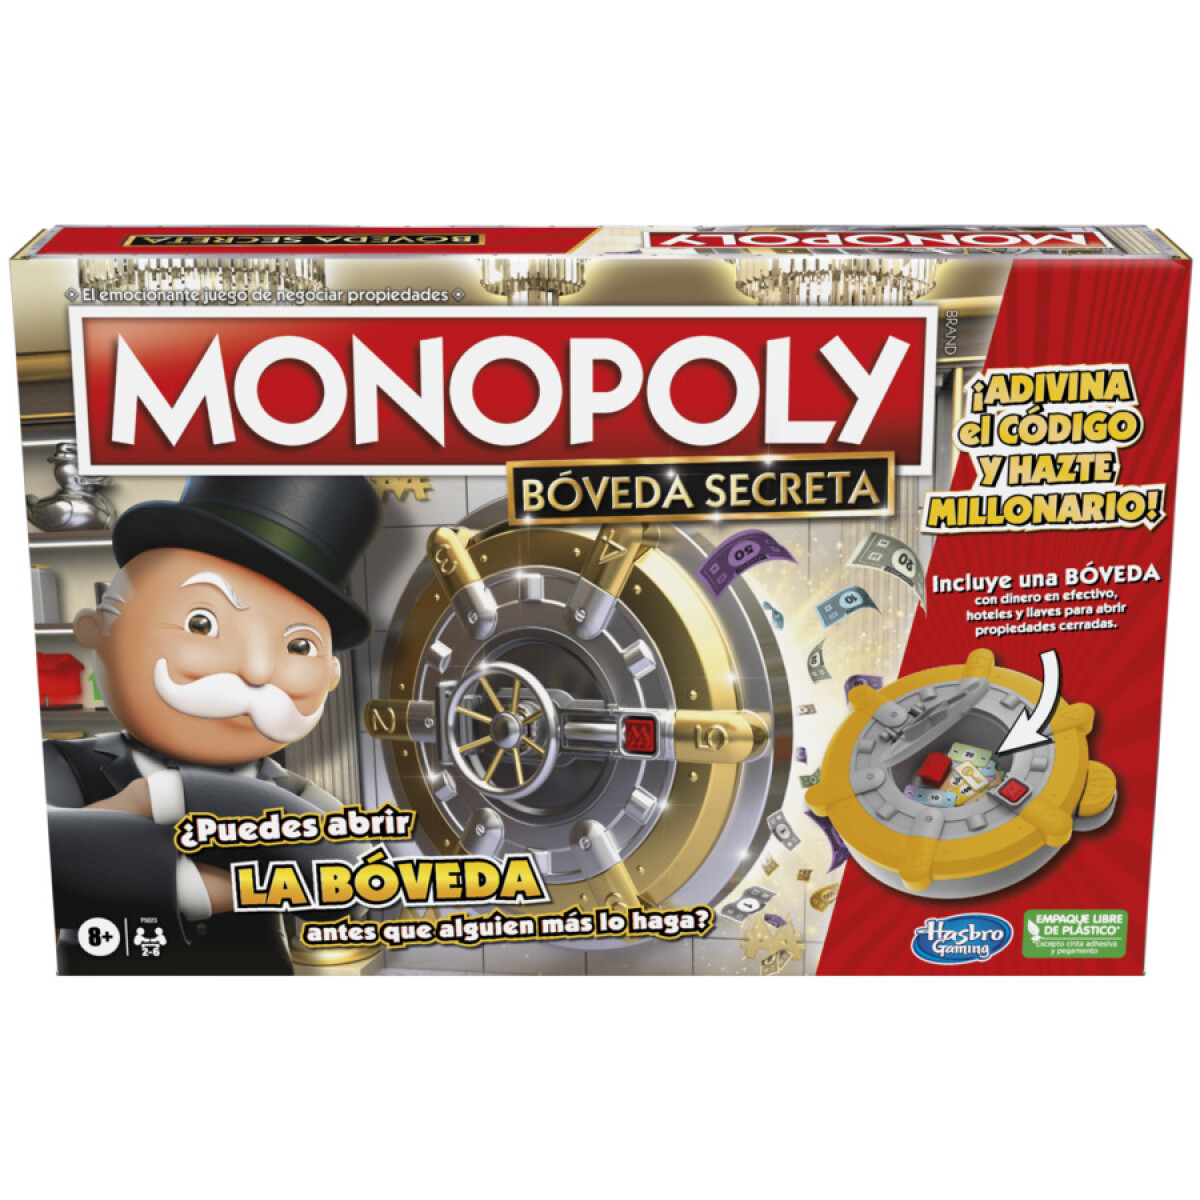 Juego de Mesa Monopoly Boveda Secreta - 001 